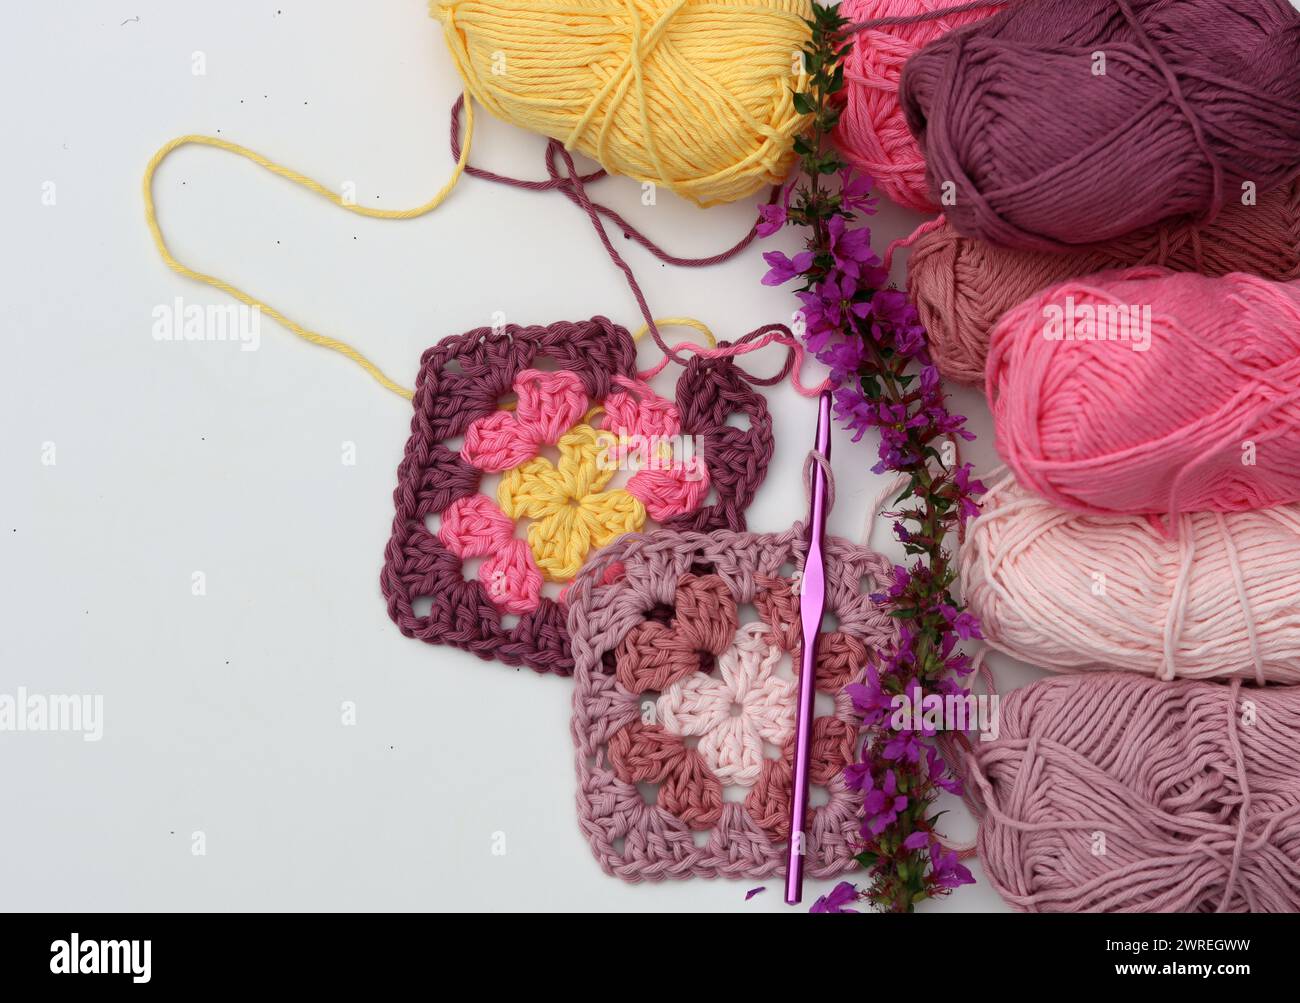 Motif au crochet, fleurs, boules de fil de coton vue de dessus photo. Carré Granny en fil organique rose doux. Motif crochet fait à la main sur fond blanc Banque D'Images